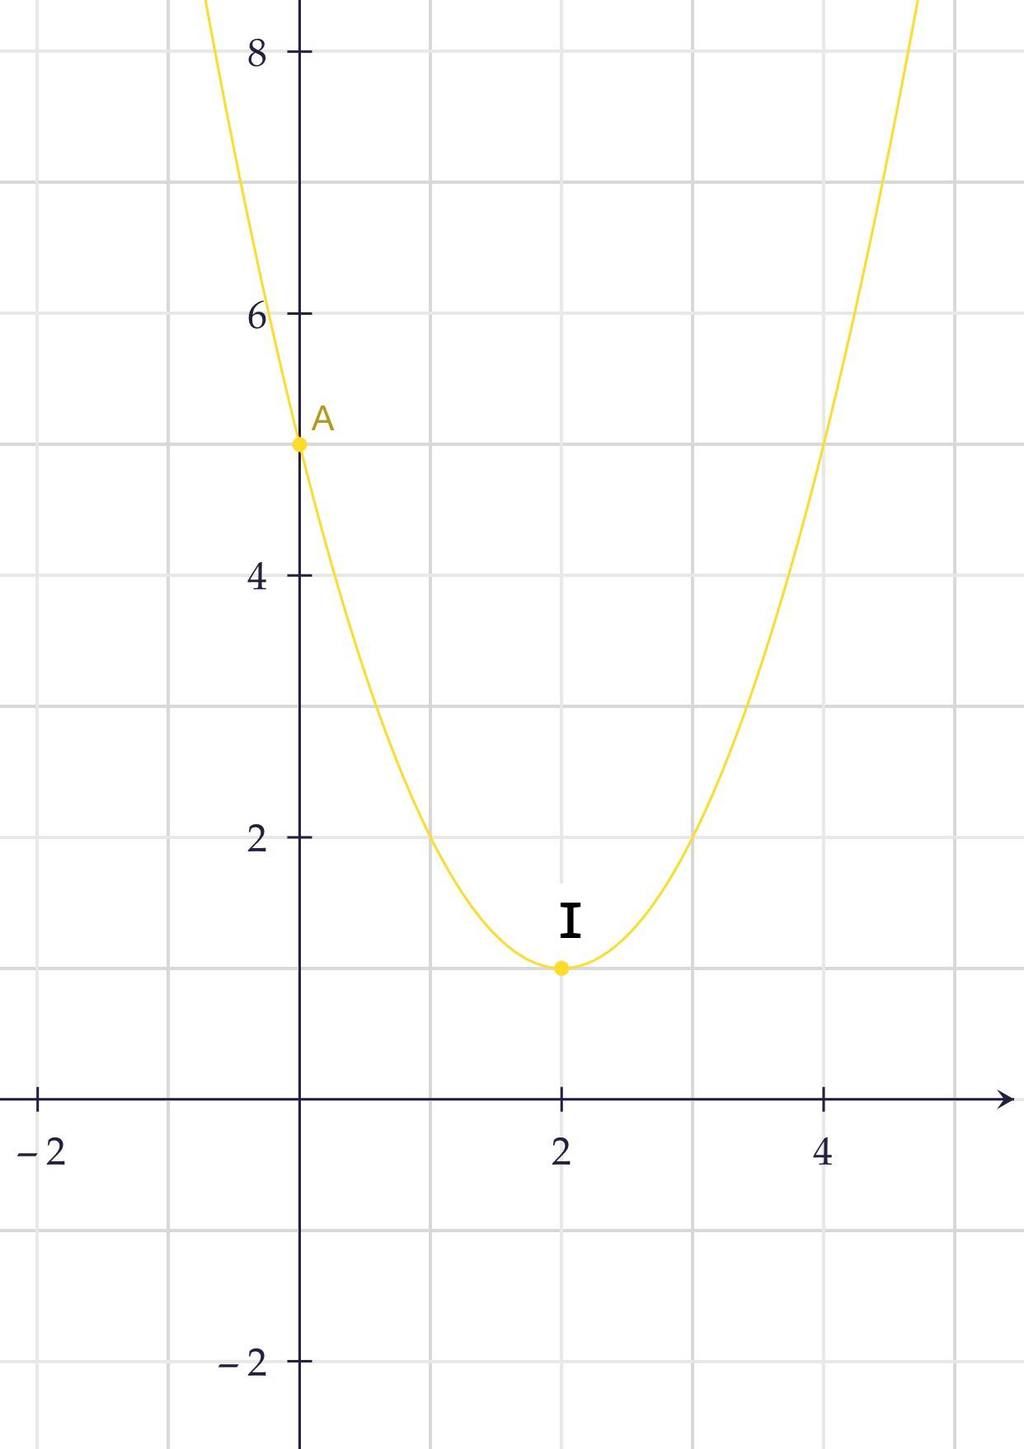 Lập bảng biến thiên y = x^2 4x 5